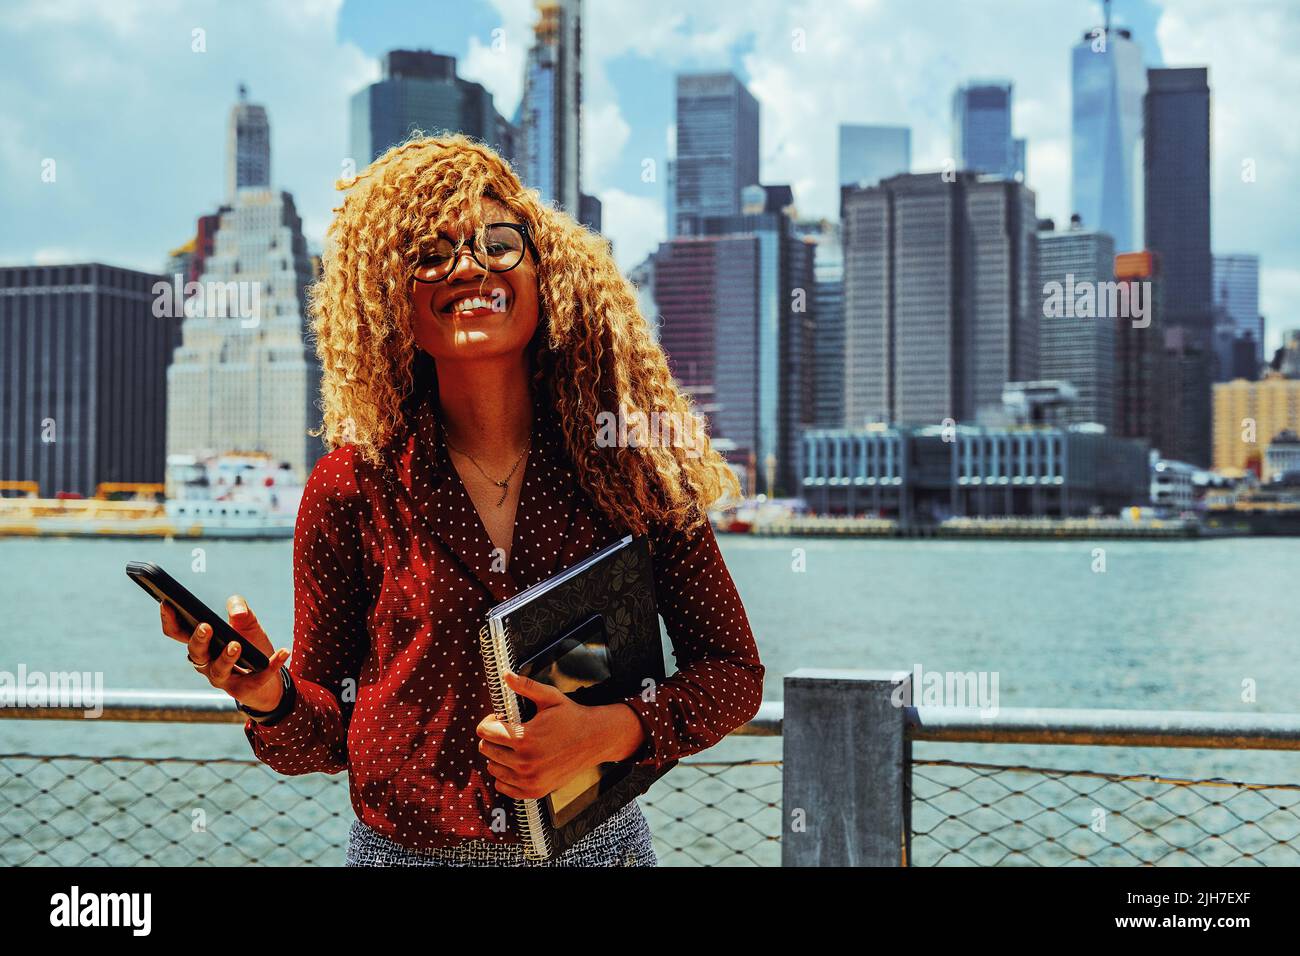 Portrait jeune entrepreneur adulte femme millénaire avec lunettes et cheveux afro souriant à l'extérieur avec Manhattan New York Skyline behindHudson River Banque D'Images